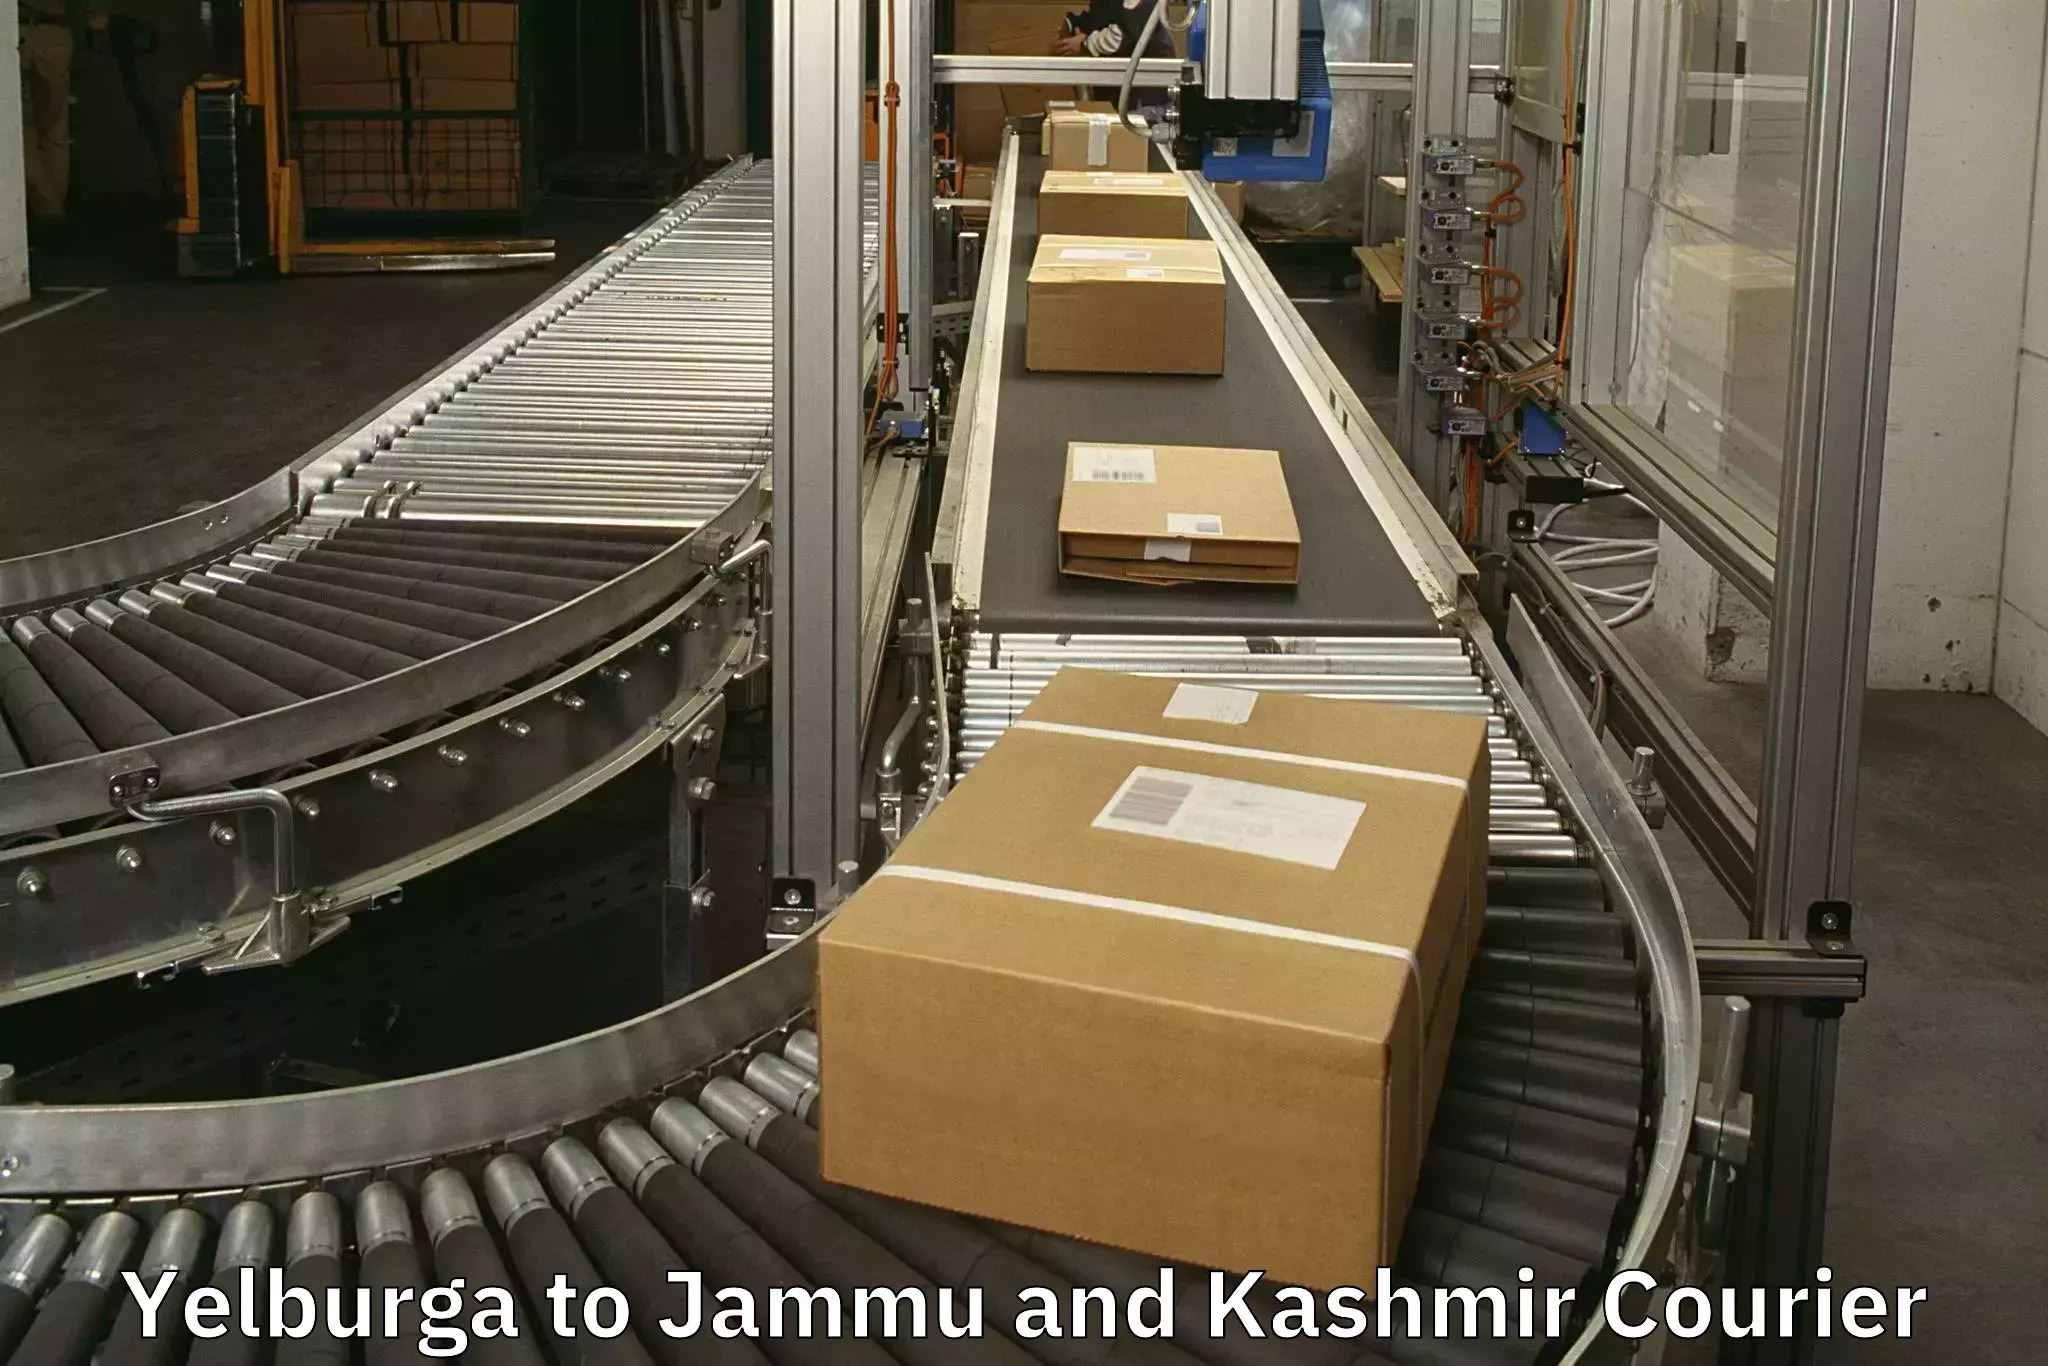 Same day luggage service Yelburga to Jammu and Kashmir